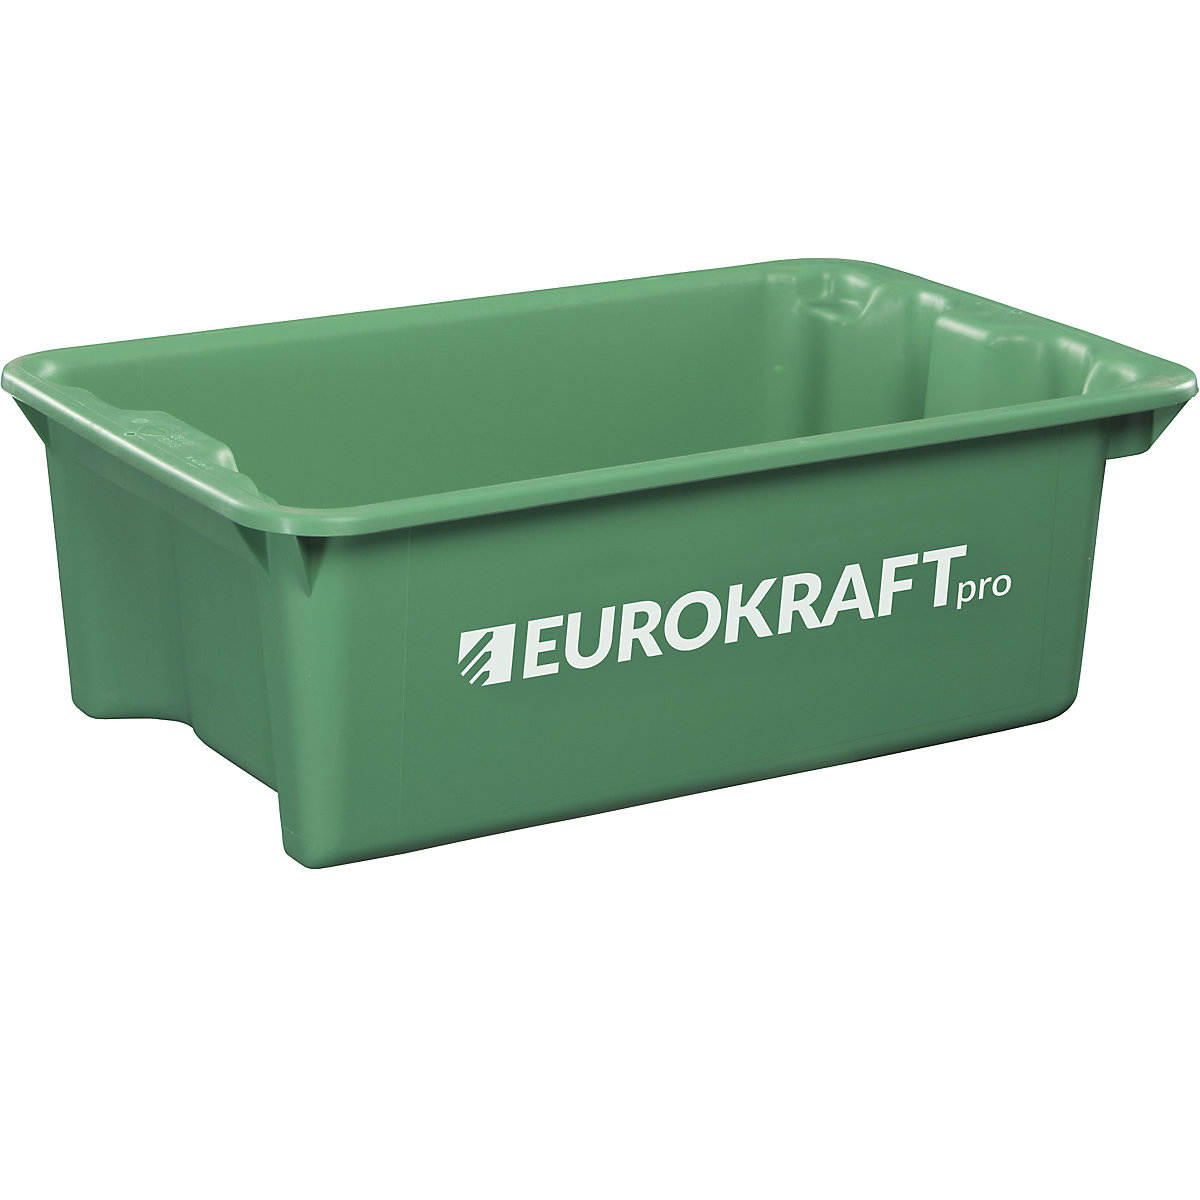 EUROKRAFTpro Drehstapelbehälter aus lebensmittelechtem Polypropylen, Inhalt 34 Liter, VE 3 Stk, Wände und Boden geschlossen, grün